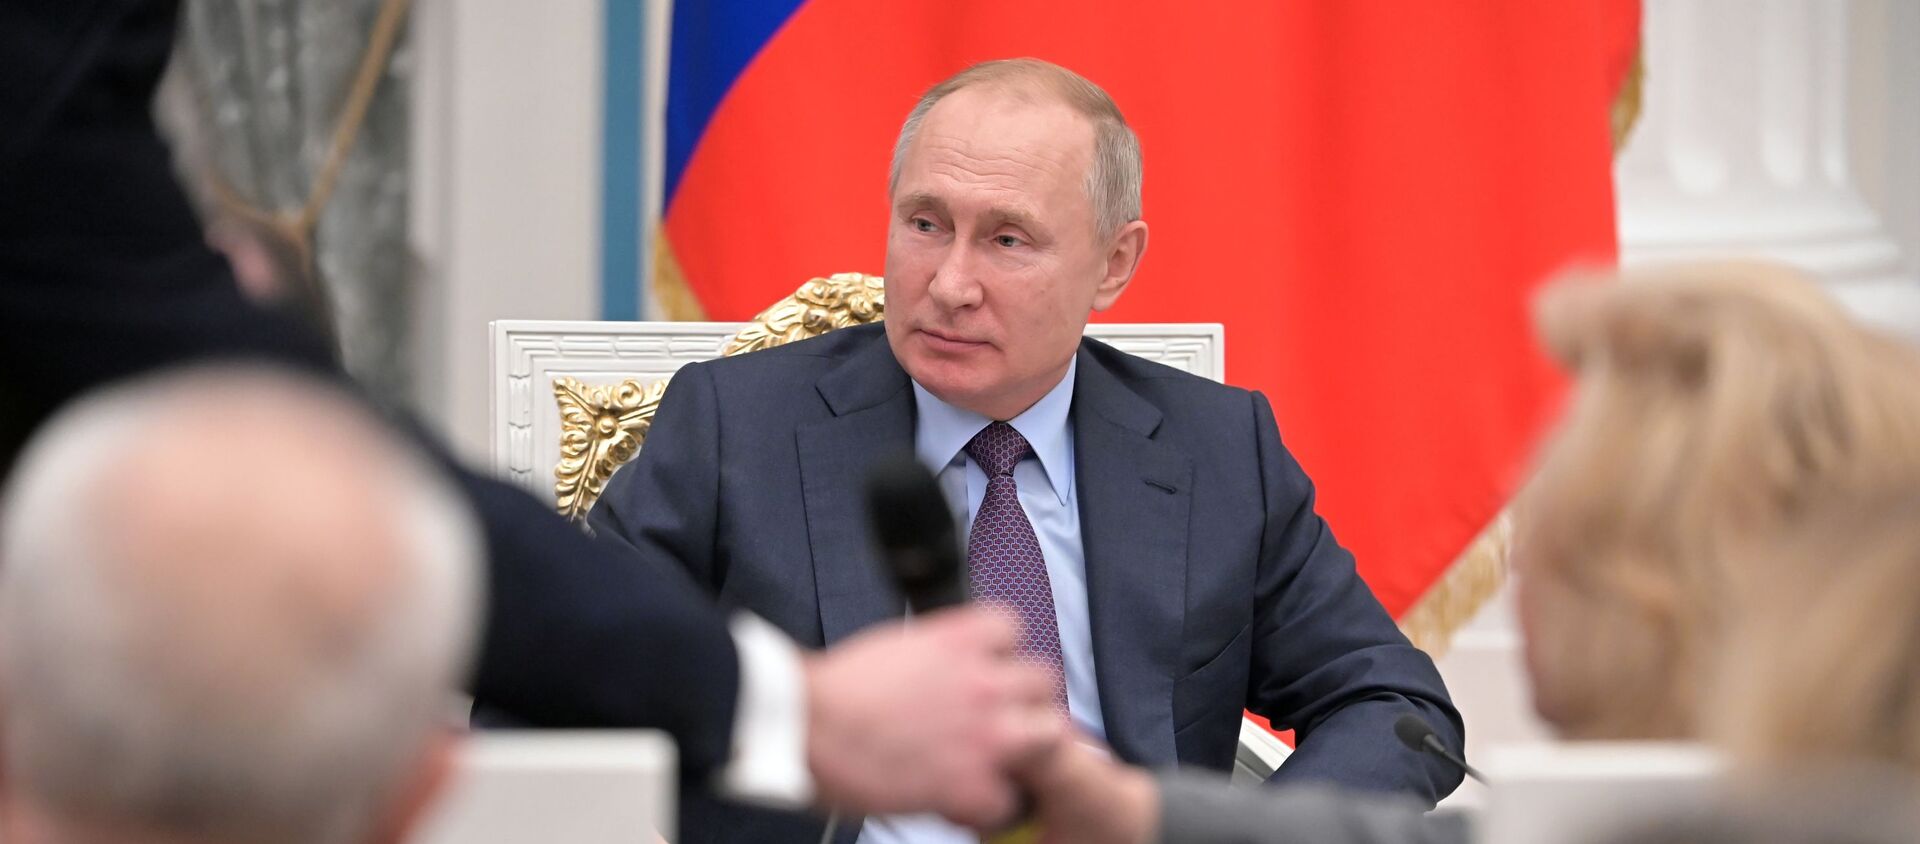 Tổng thống Nga Vladimir Putin gặp gỡ các giám sát viên nhân quyền khu vực - Sputnik Việt Nam, 1920, 11.12.2019